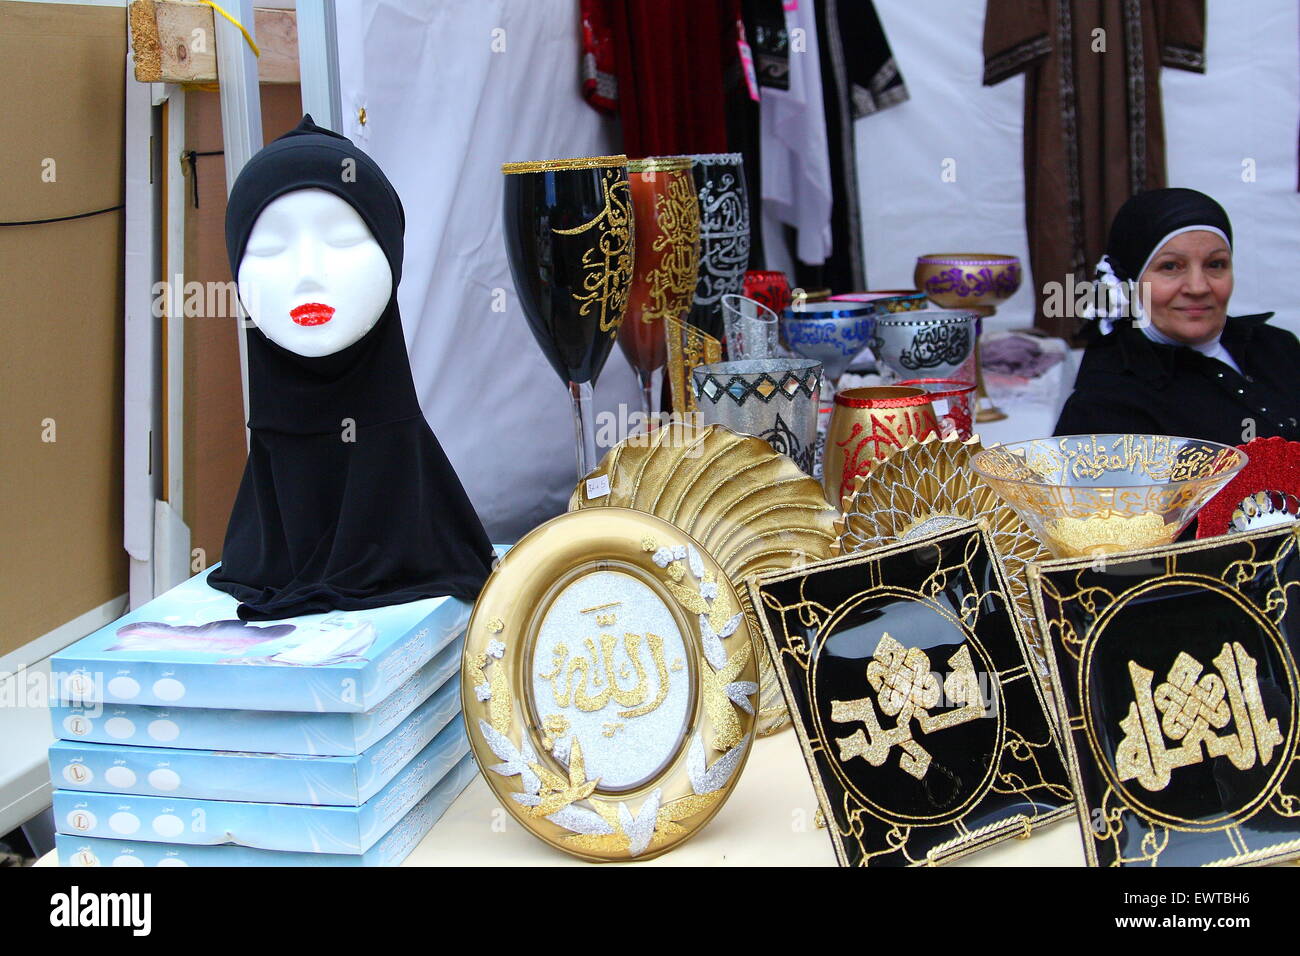 Échoppe de marché la vente de décorations et de vêtements islamiques au cours de l'Eid Festival à Melbourne, Australie Dandenong Banque D'Images